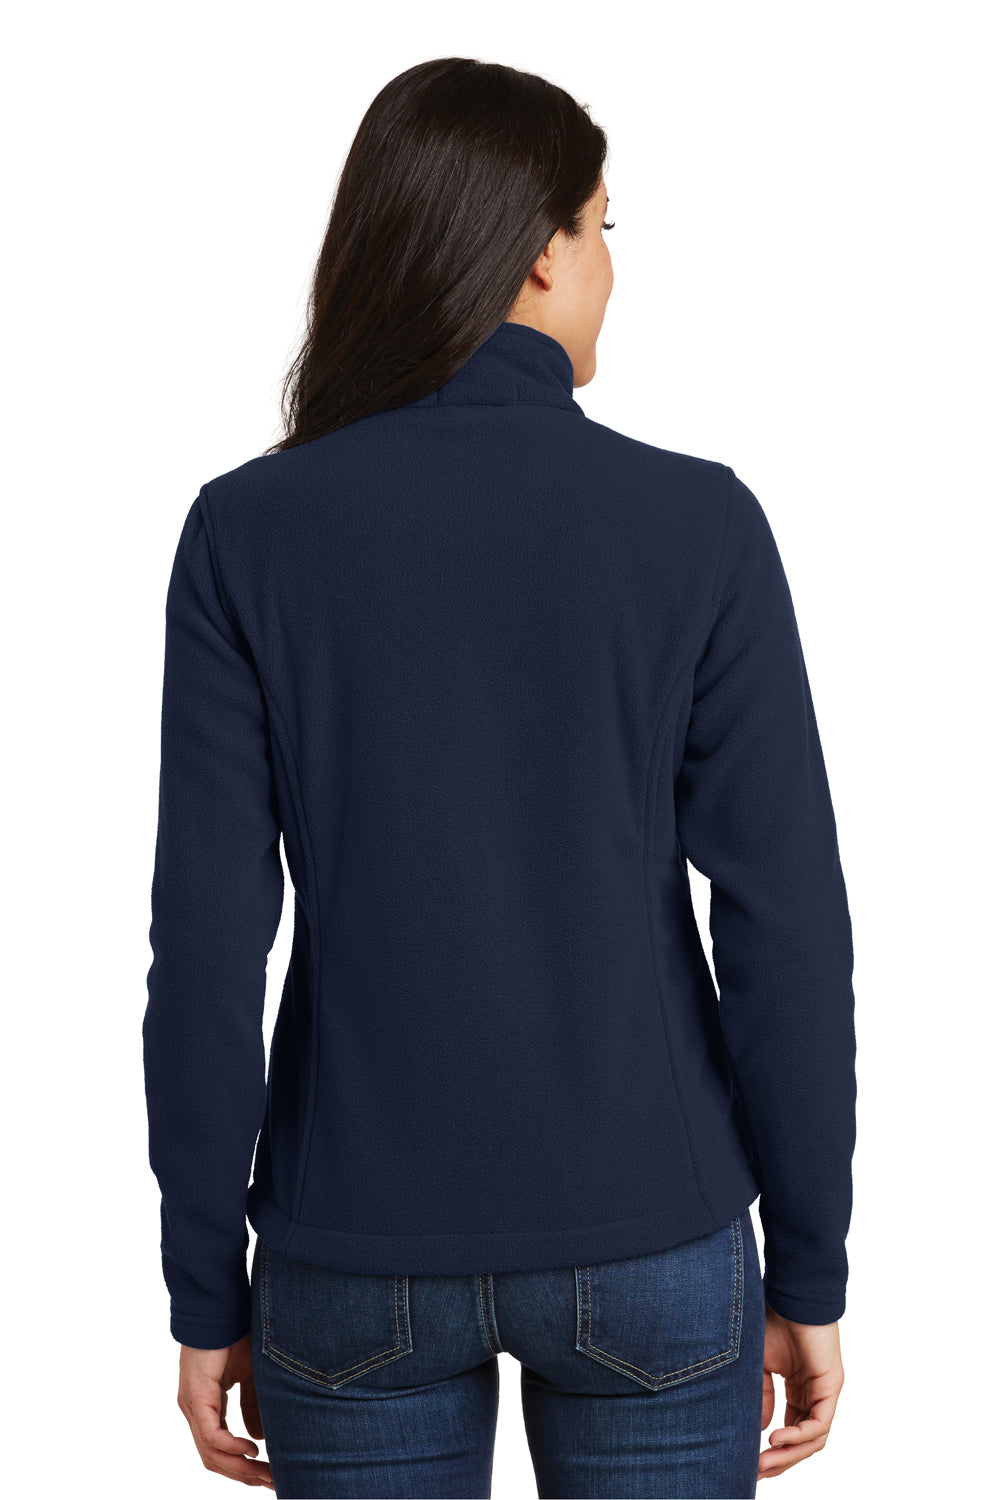 Ladies Port Authority Value Fleece Jacket